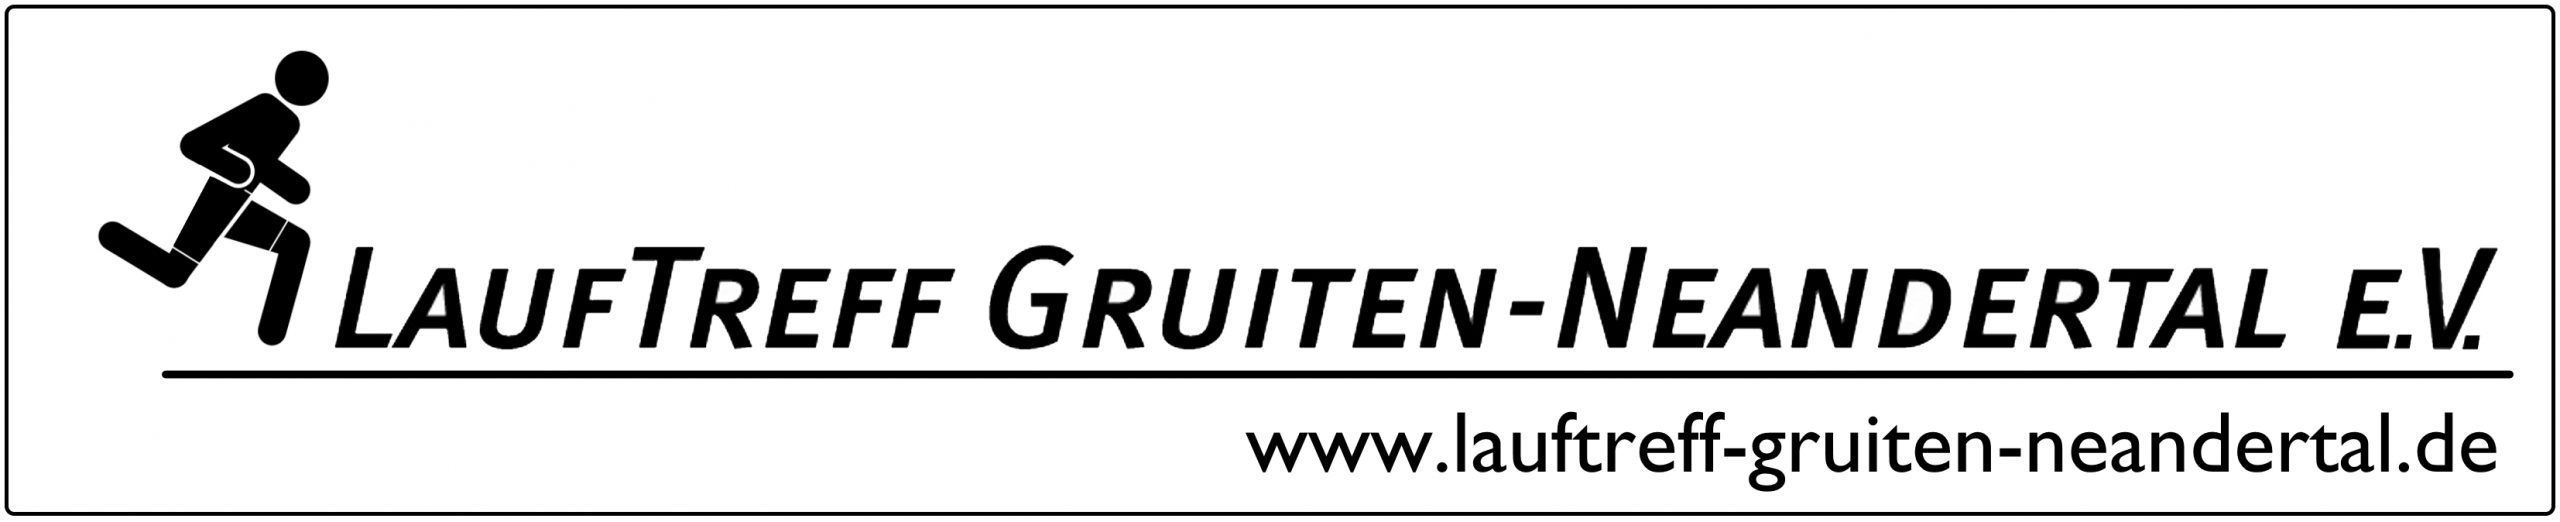 Lauftreff Gruiten-Neandertal e.V.